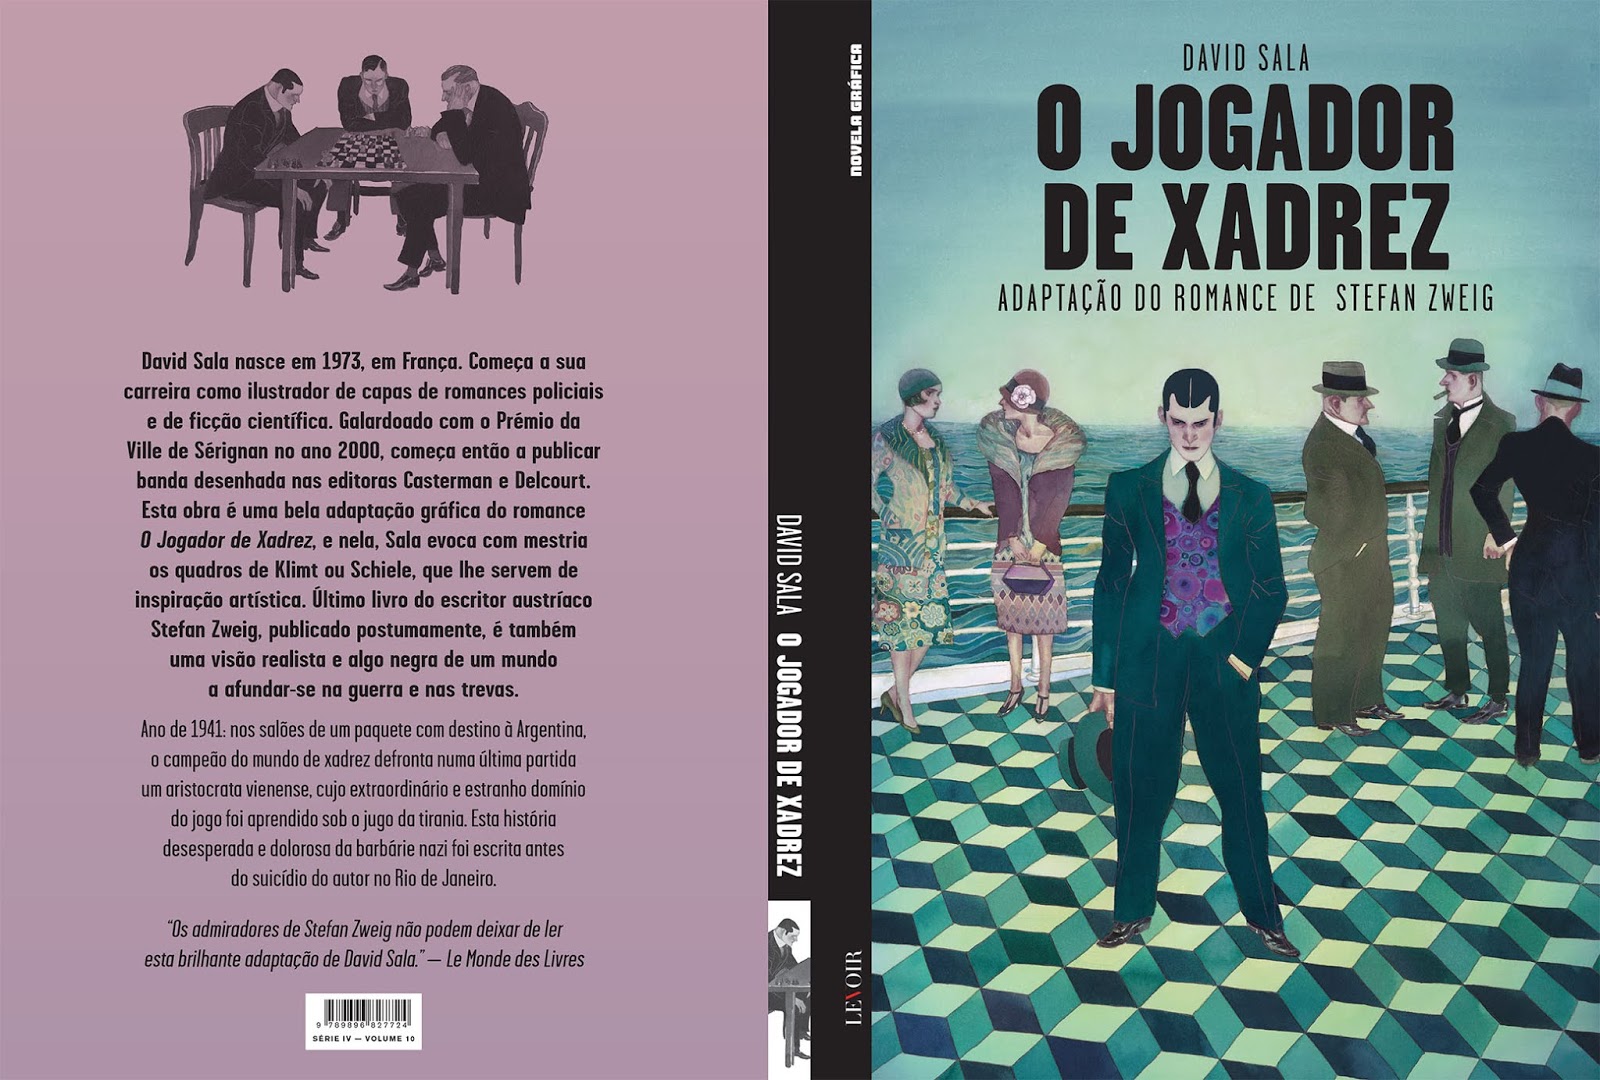  O Jogador de Xadrez: Schachnovelle (Portuguese Edition